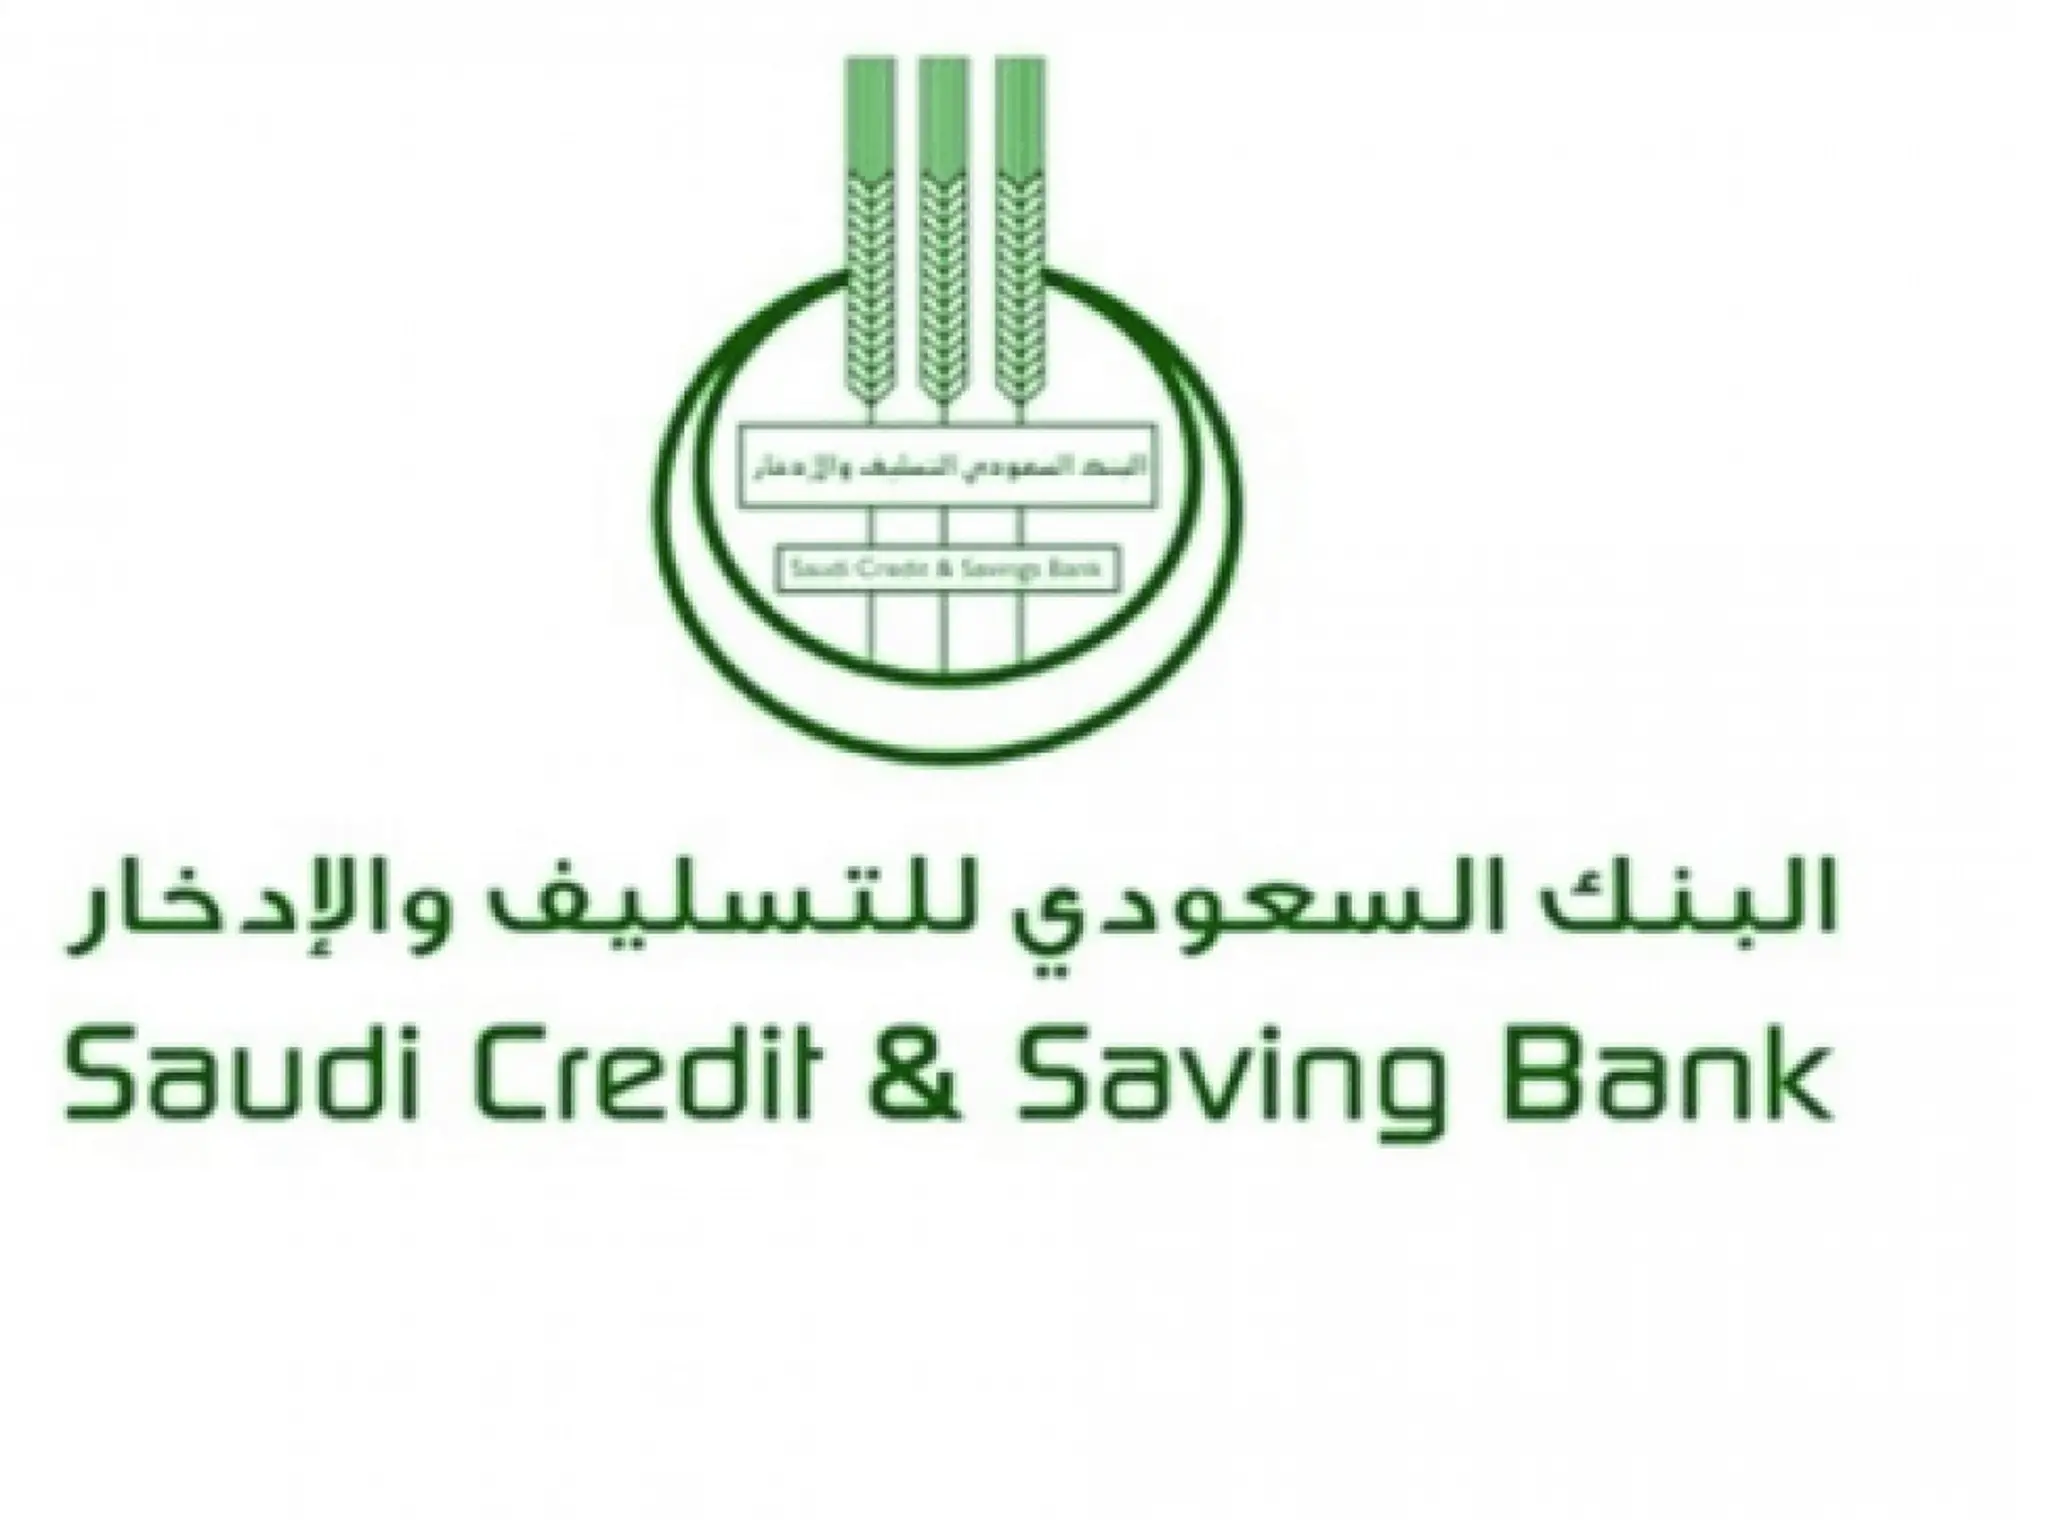 إعفاء بنك التسليف والادخار من سداد القروض لجميع السعودين والوافدين 1444-2022